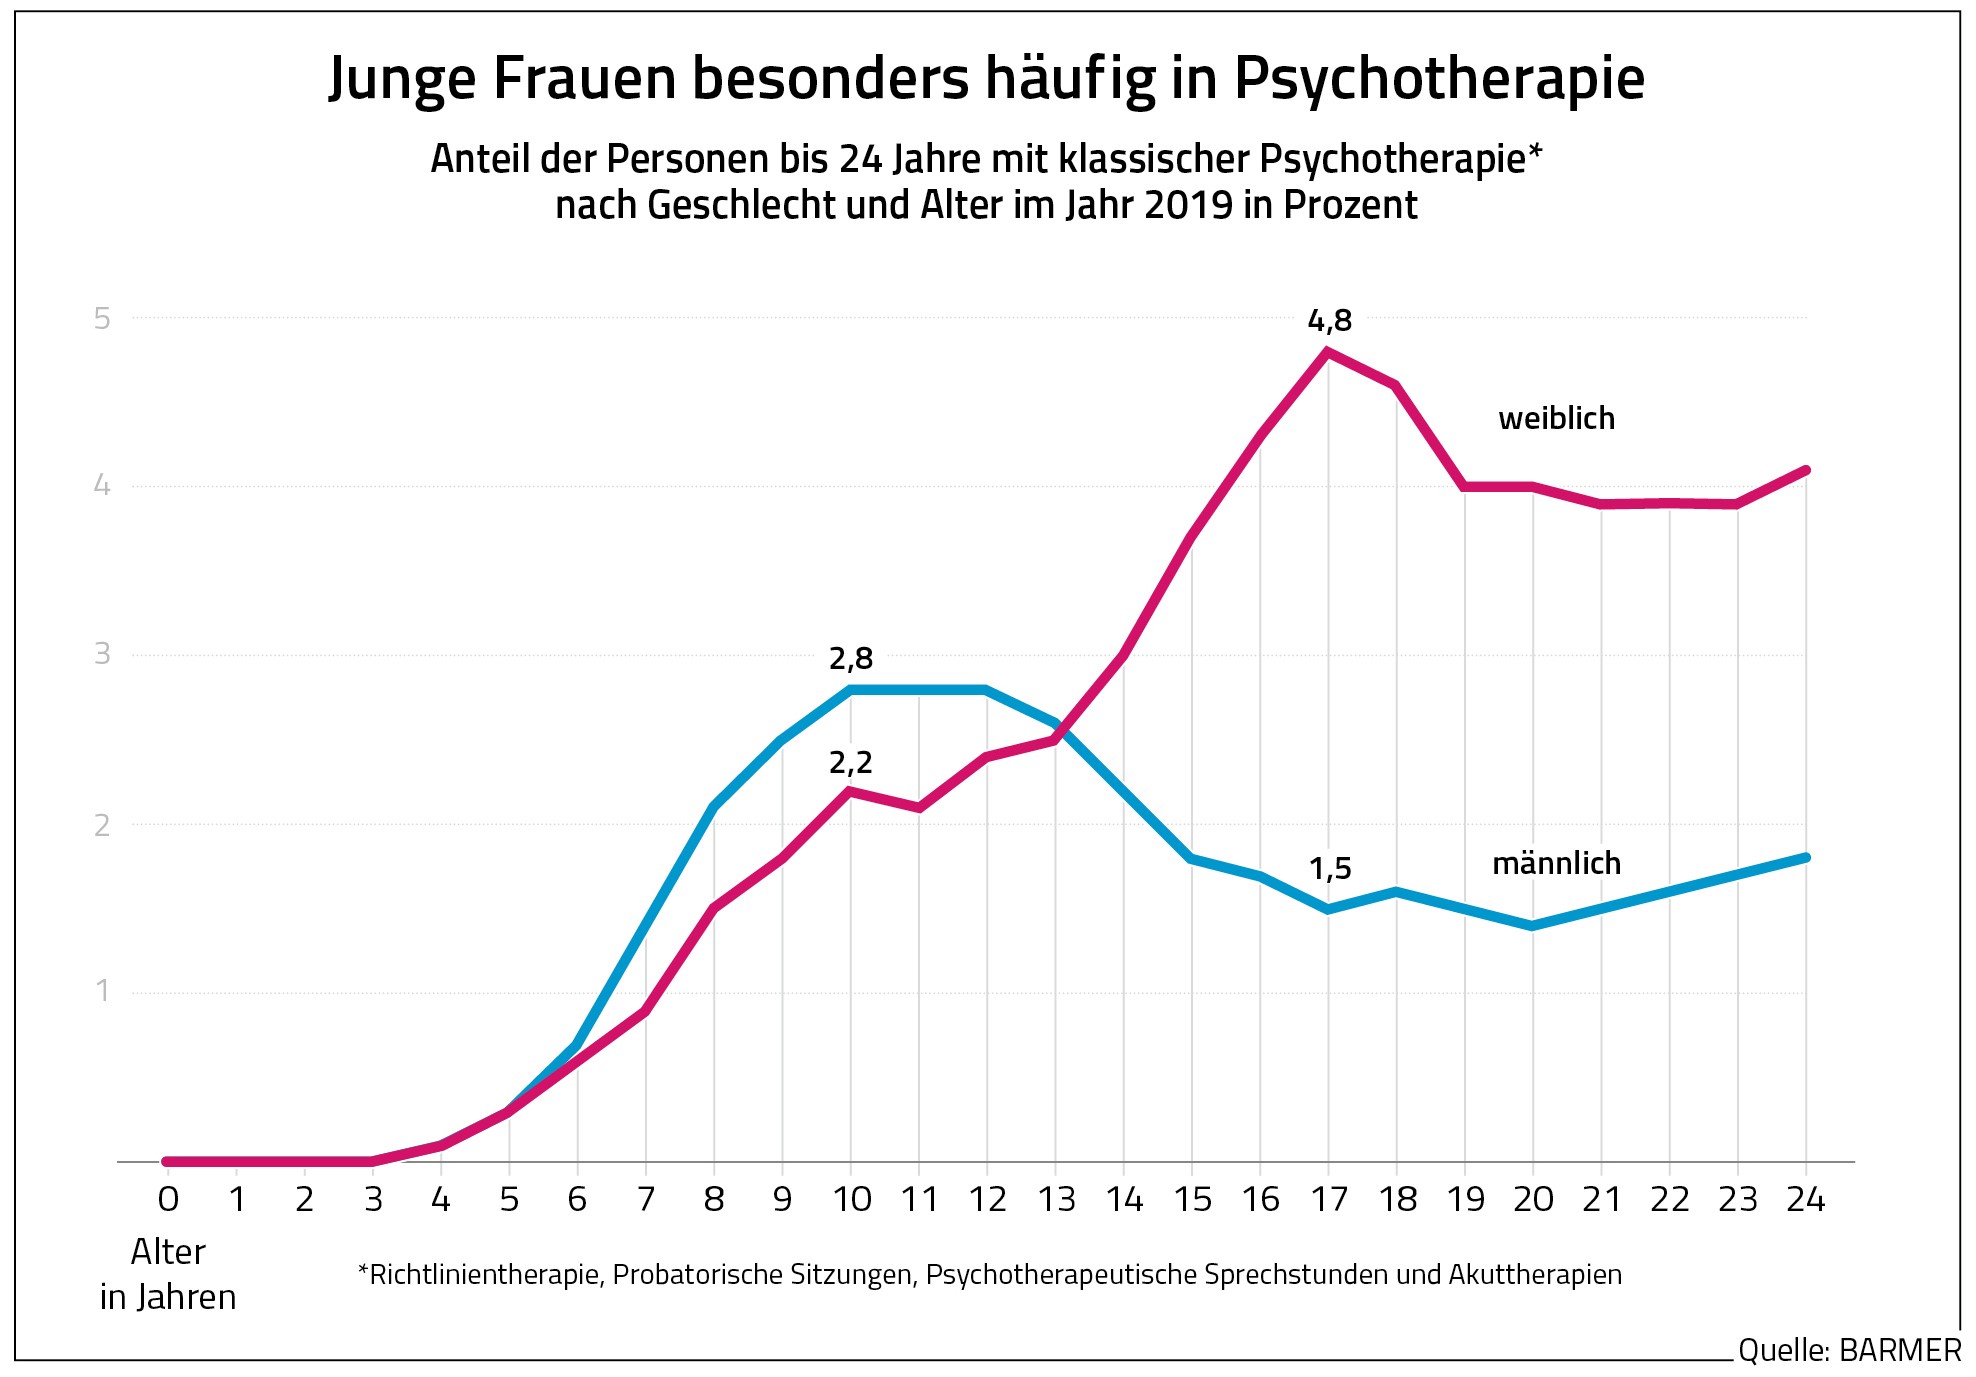 Die Grafik zeigt de Anteil von jungen Menschen bis 24 Jahren nach Geschlecht, die eine Psychotherapie machen.